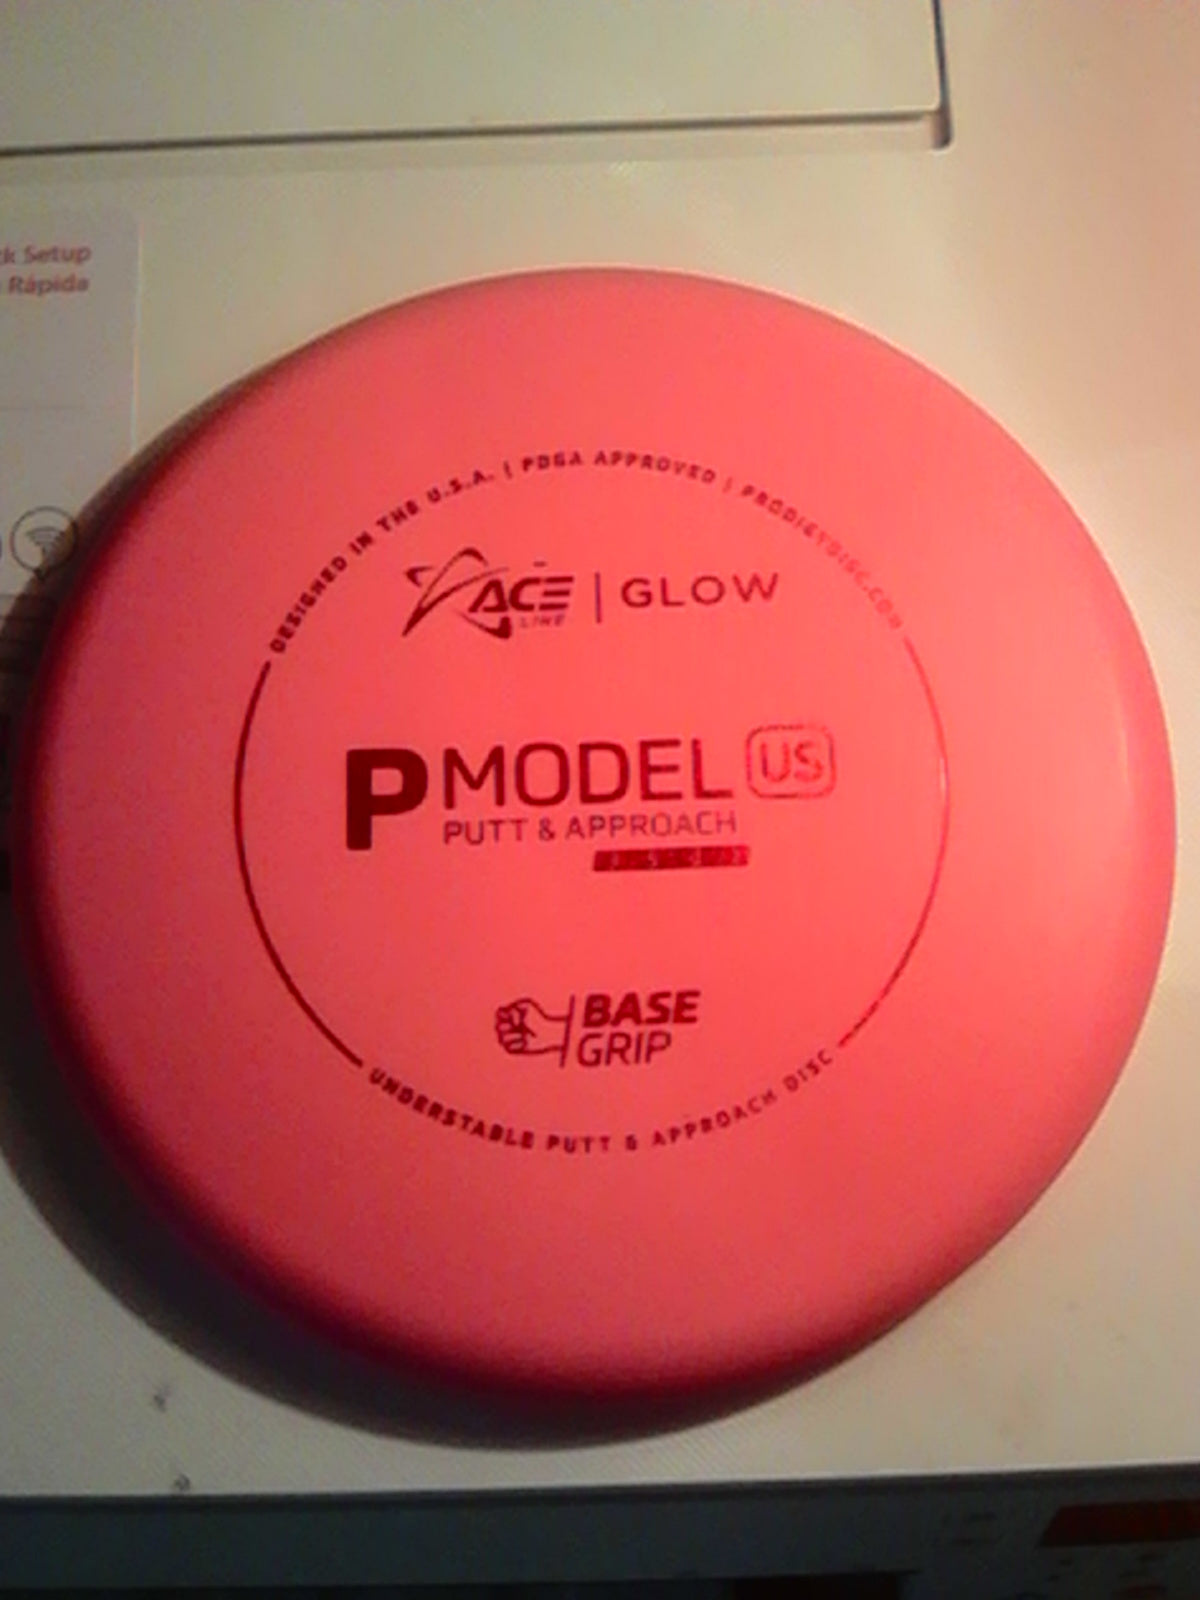 Prodigy Ace Line Base Grip Glow P Model US 174 Grams (GP2A,B,C,&D)